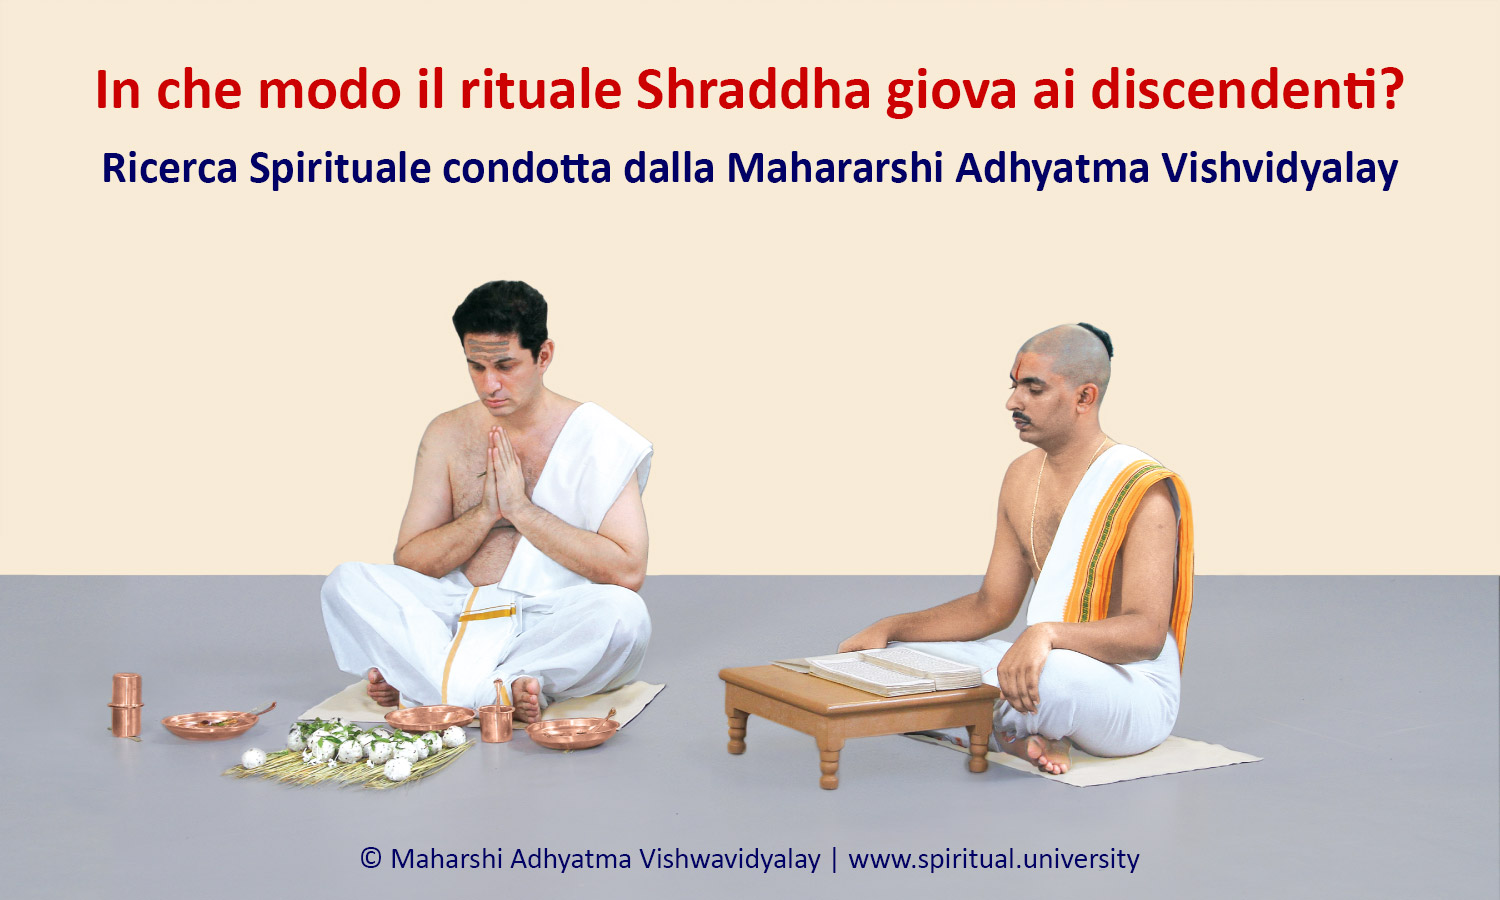 In che modo il rituale Shraddha giova ai dscendenti?